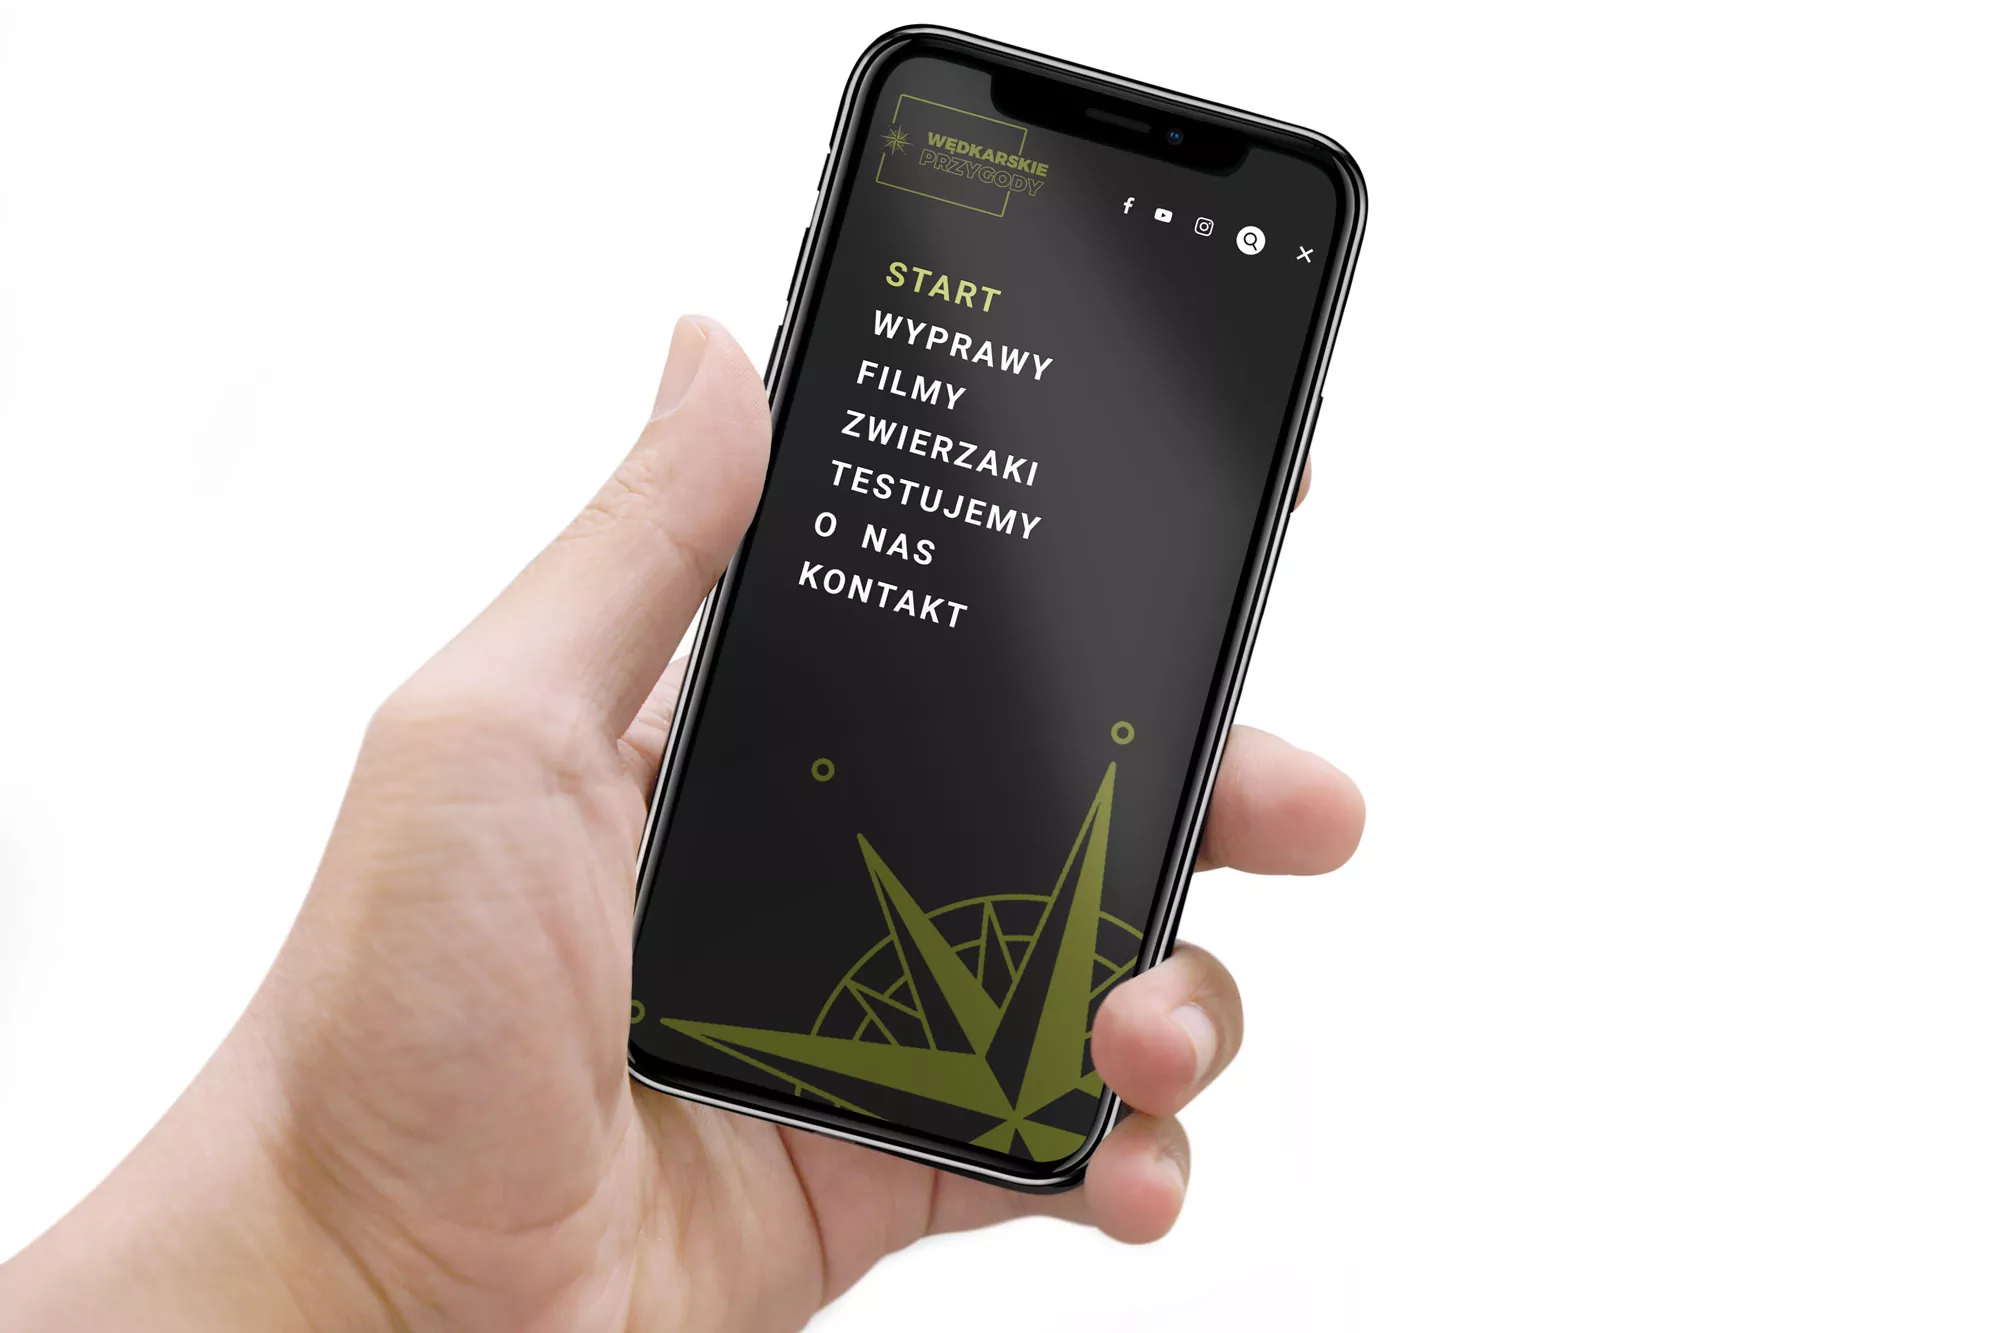 Wędkarskie Przygody - serwis internetowy menu mobilne na telefonie